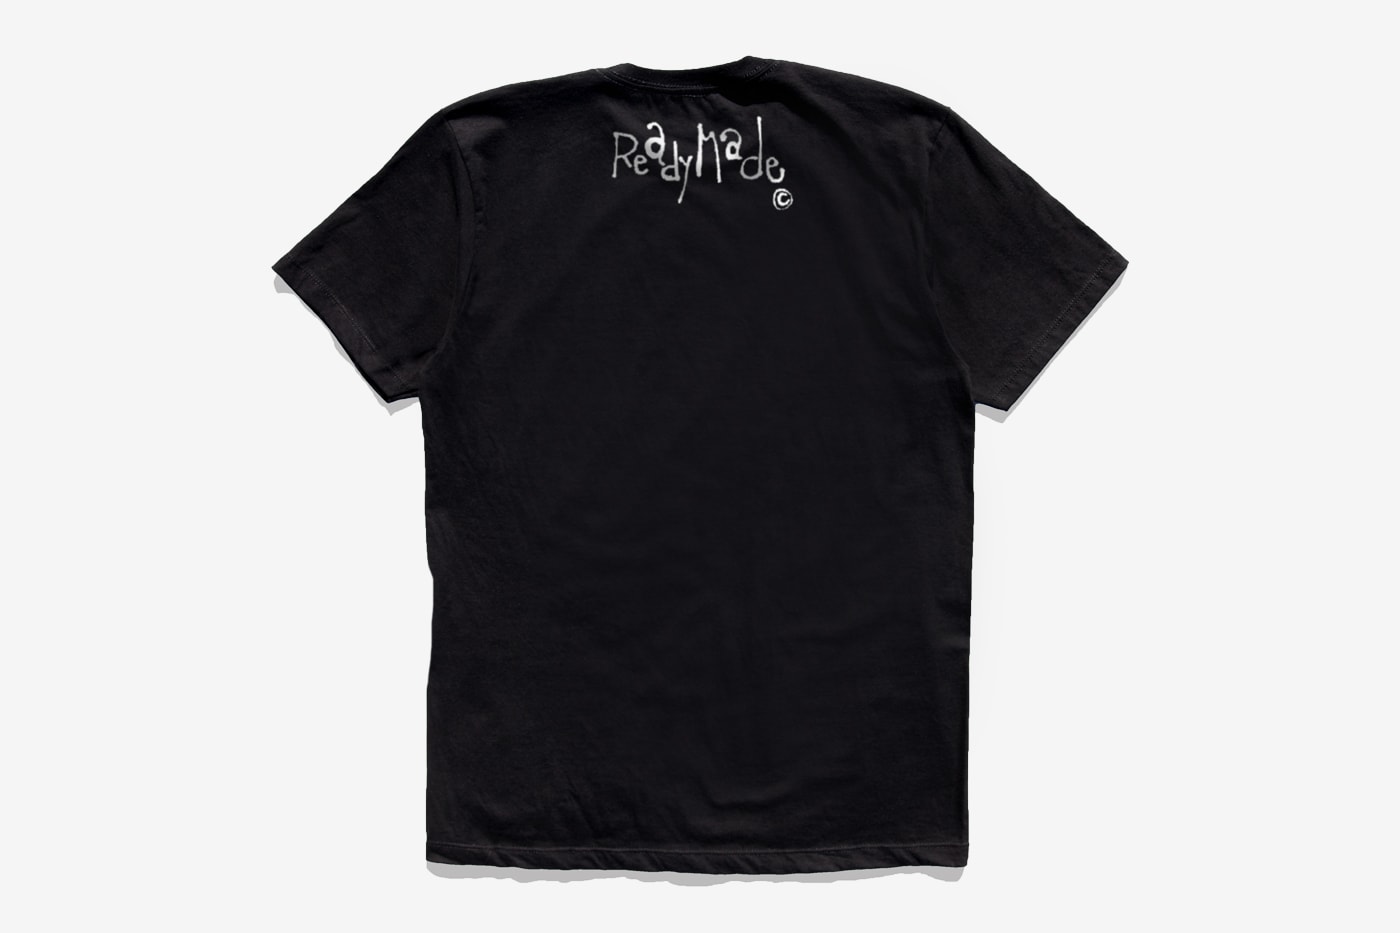 ザ・ウィークエンドがレディメイドとのコラボマーチをリリース The Weeknd READYMADE After Hours Capsule Collection Release T shirt long short sleeve black white 